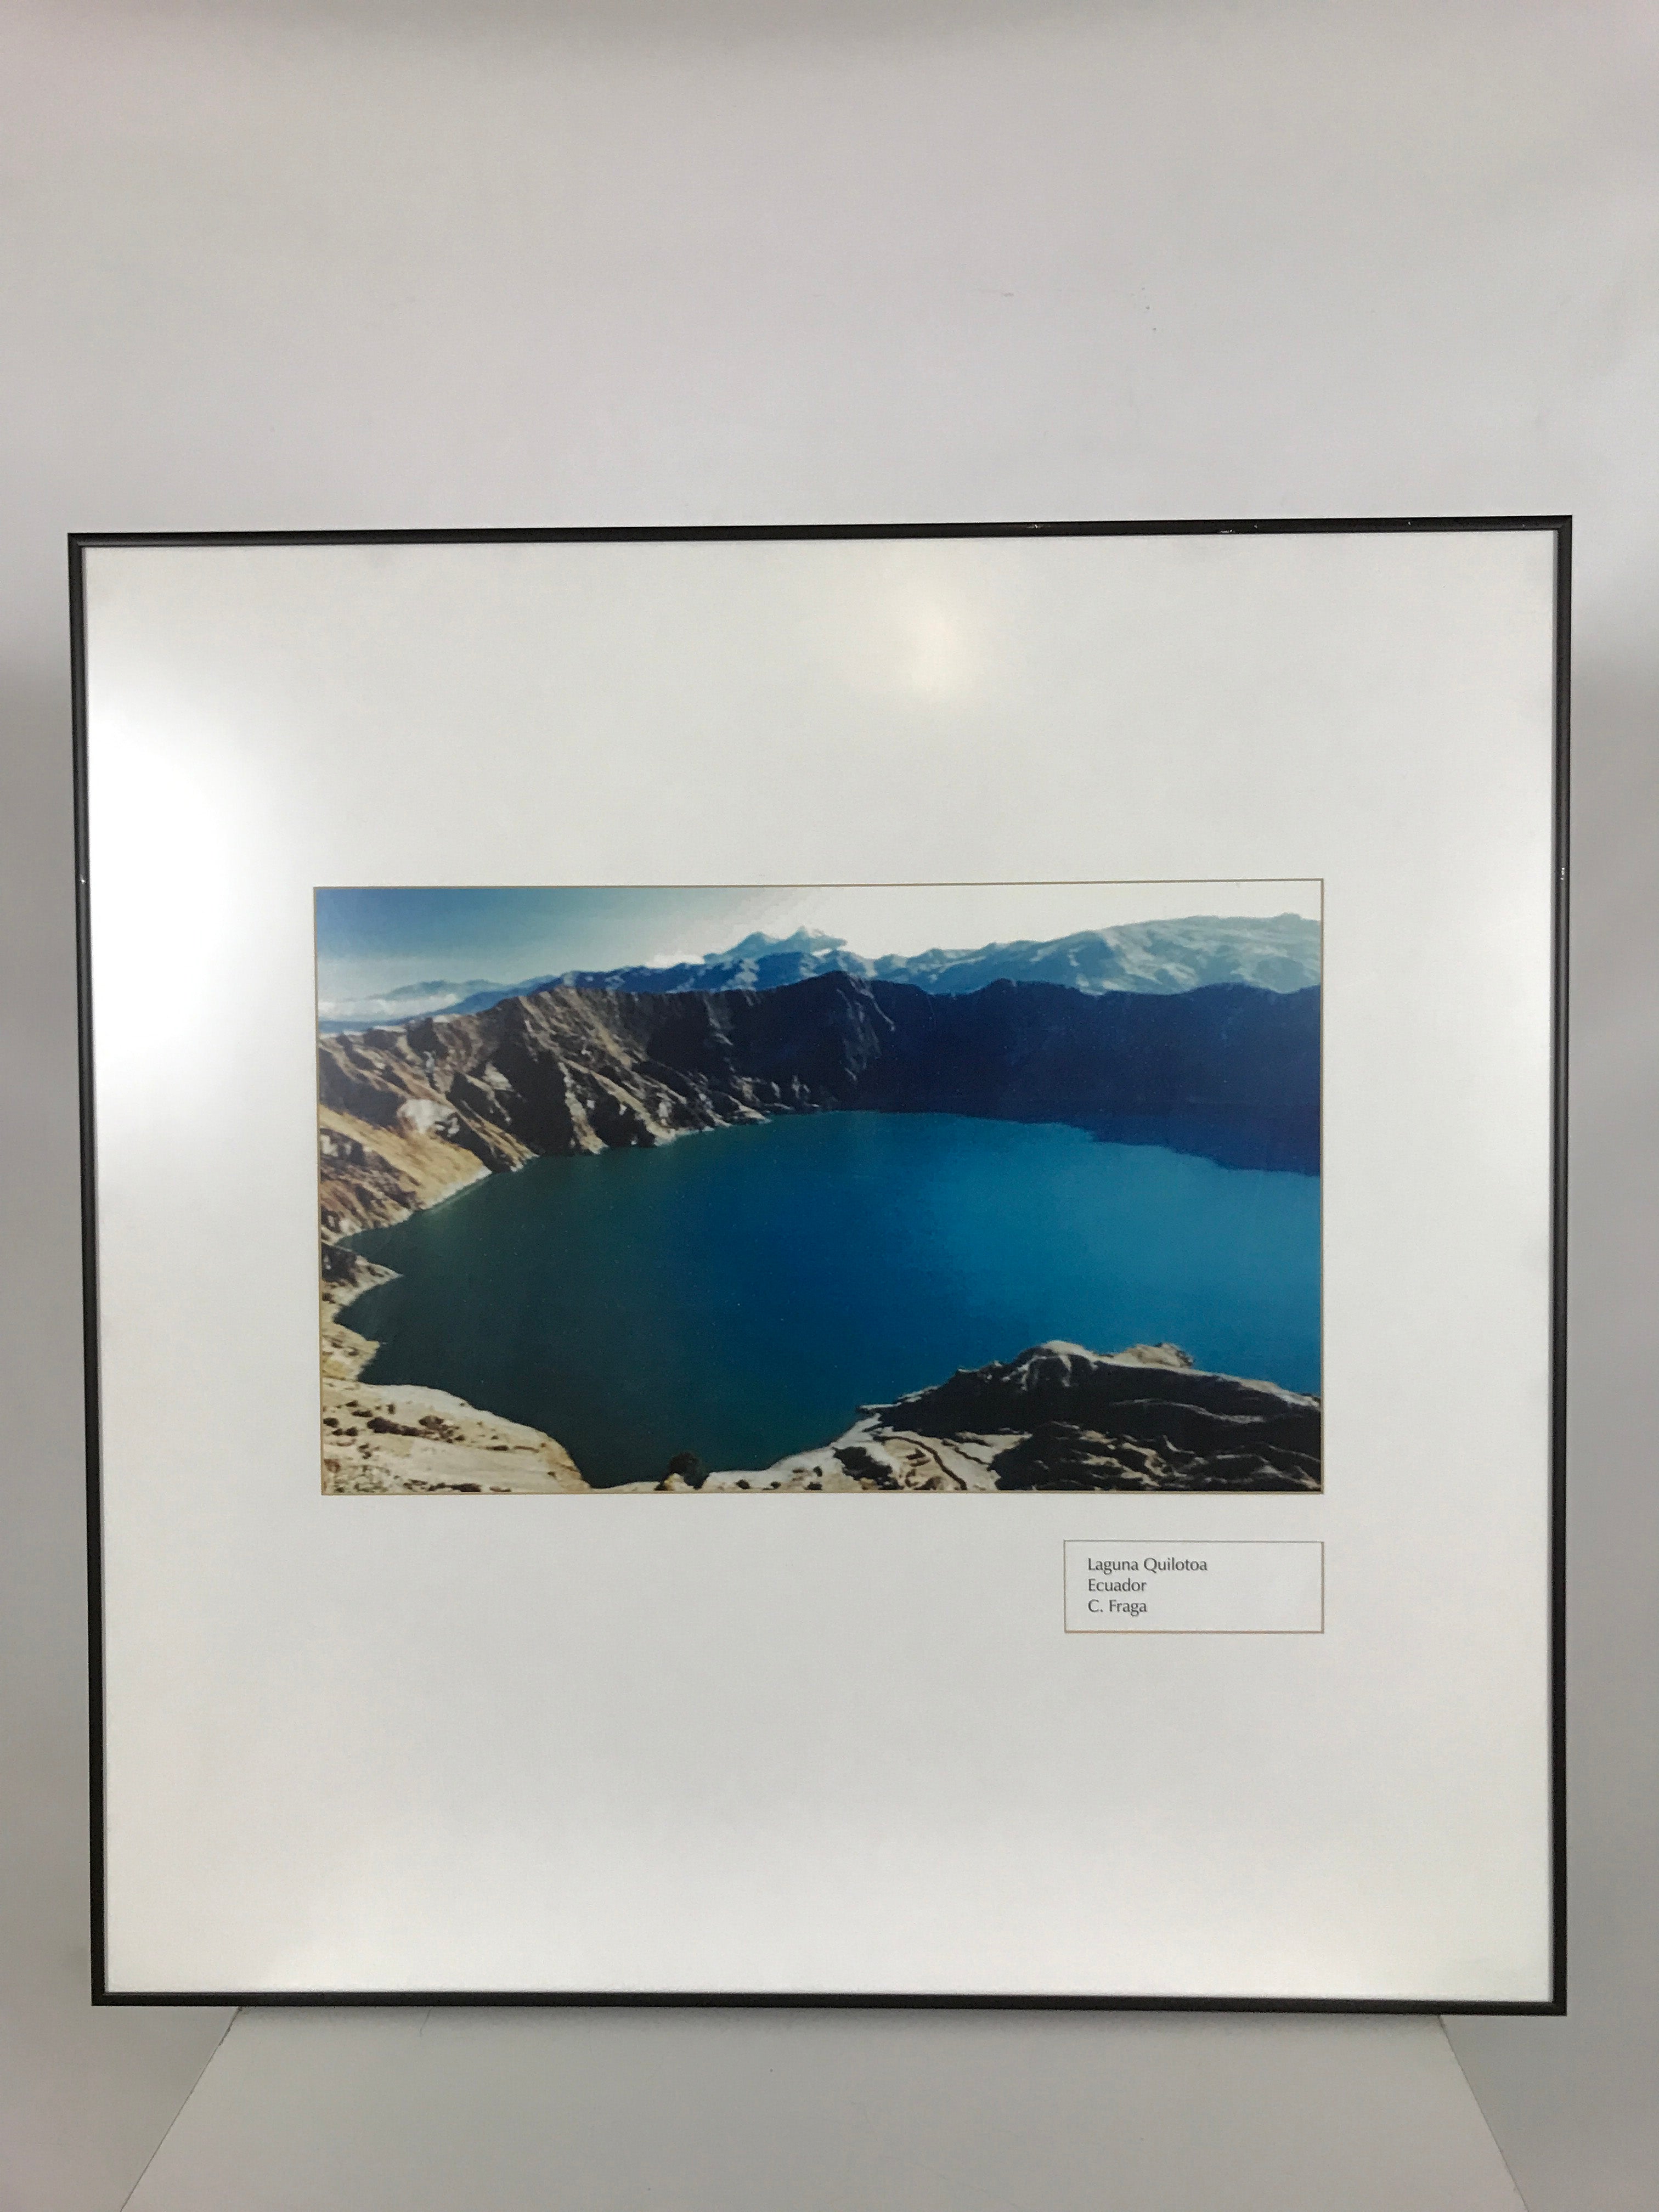 "Laguna Quilotoa Ecuador" Framed Photograph